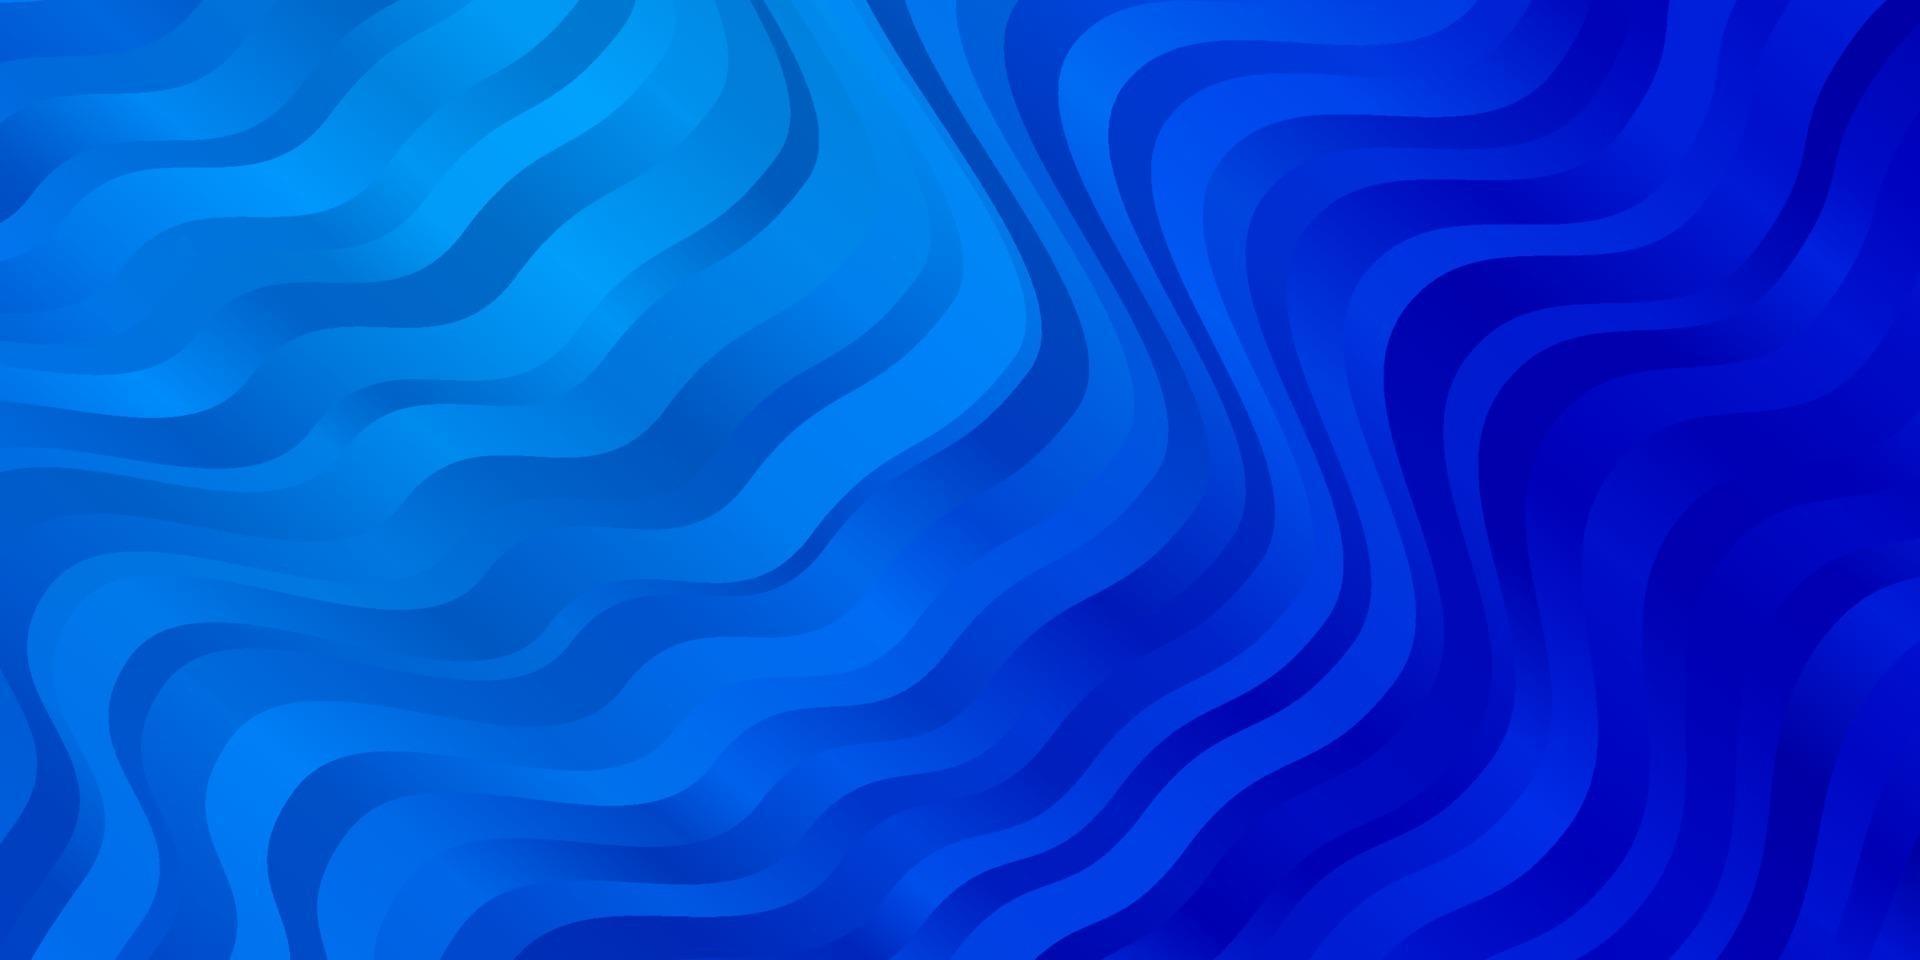 textura vector azul claro com linhas irônicas.